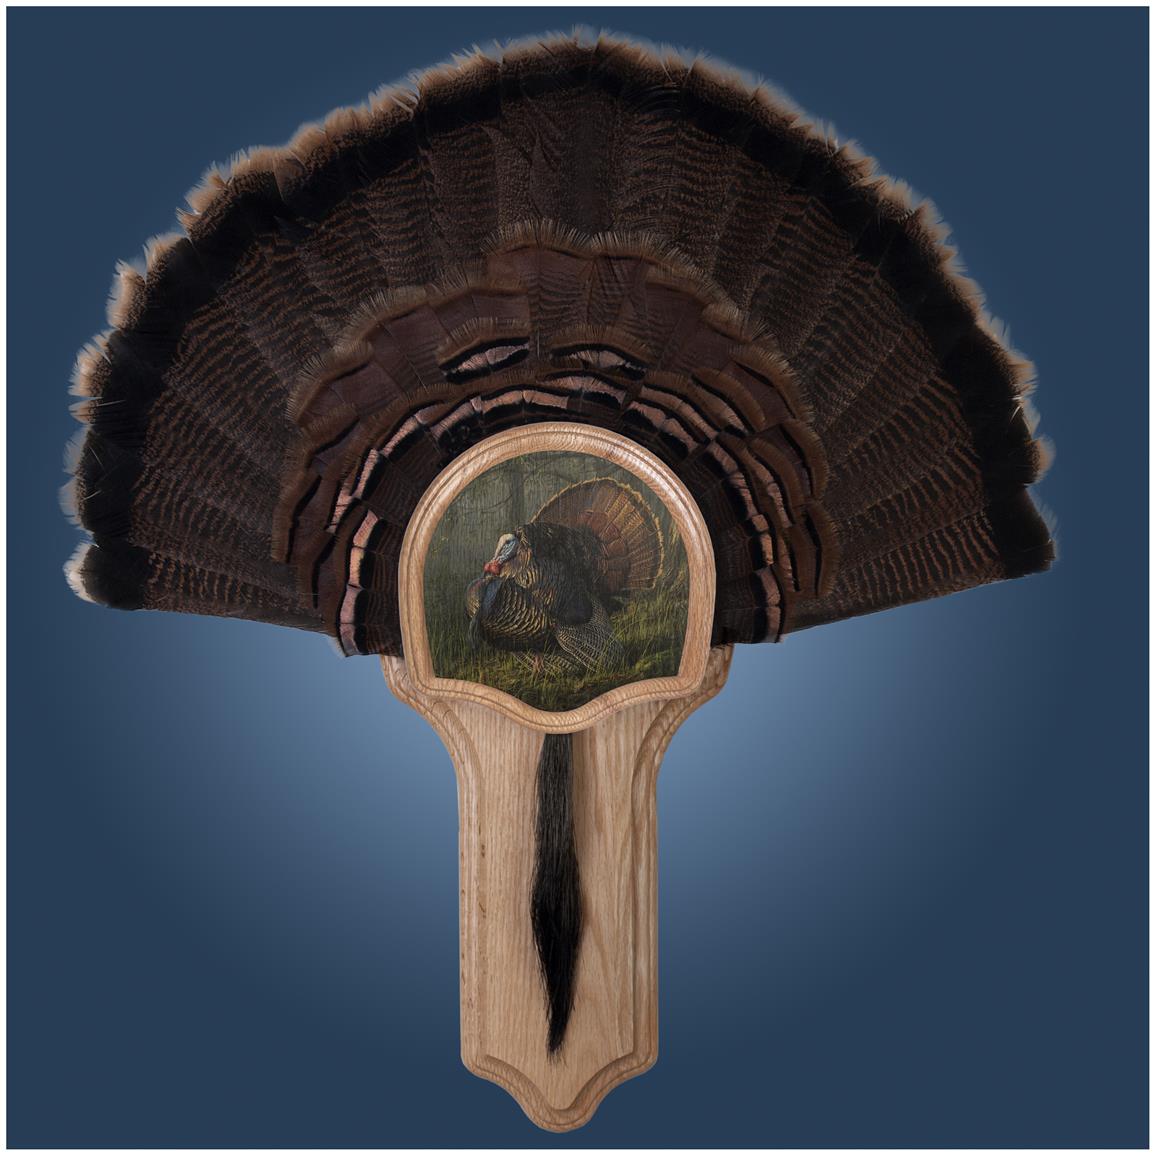 Walnut Hollow "King of Spring" Deluxe Turkey Fan Mount Display Kit